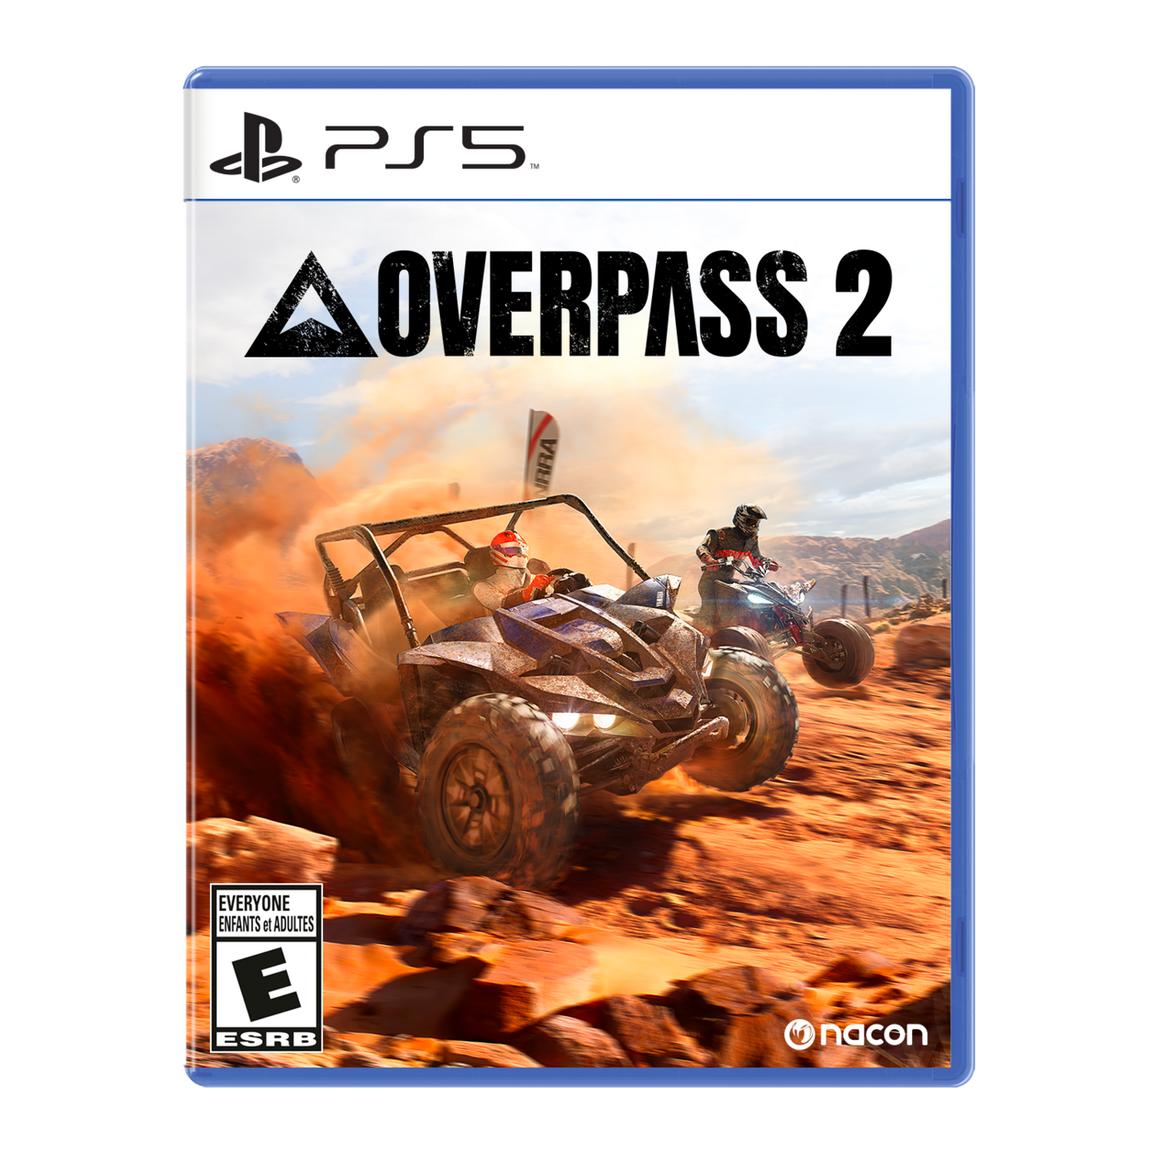 Видеоигра Overpass 2 - PlayStation 5 видеоигра unicorn overlord playstation 5